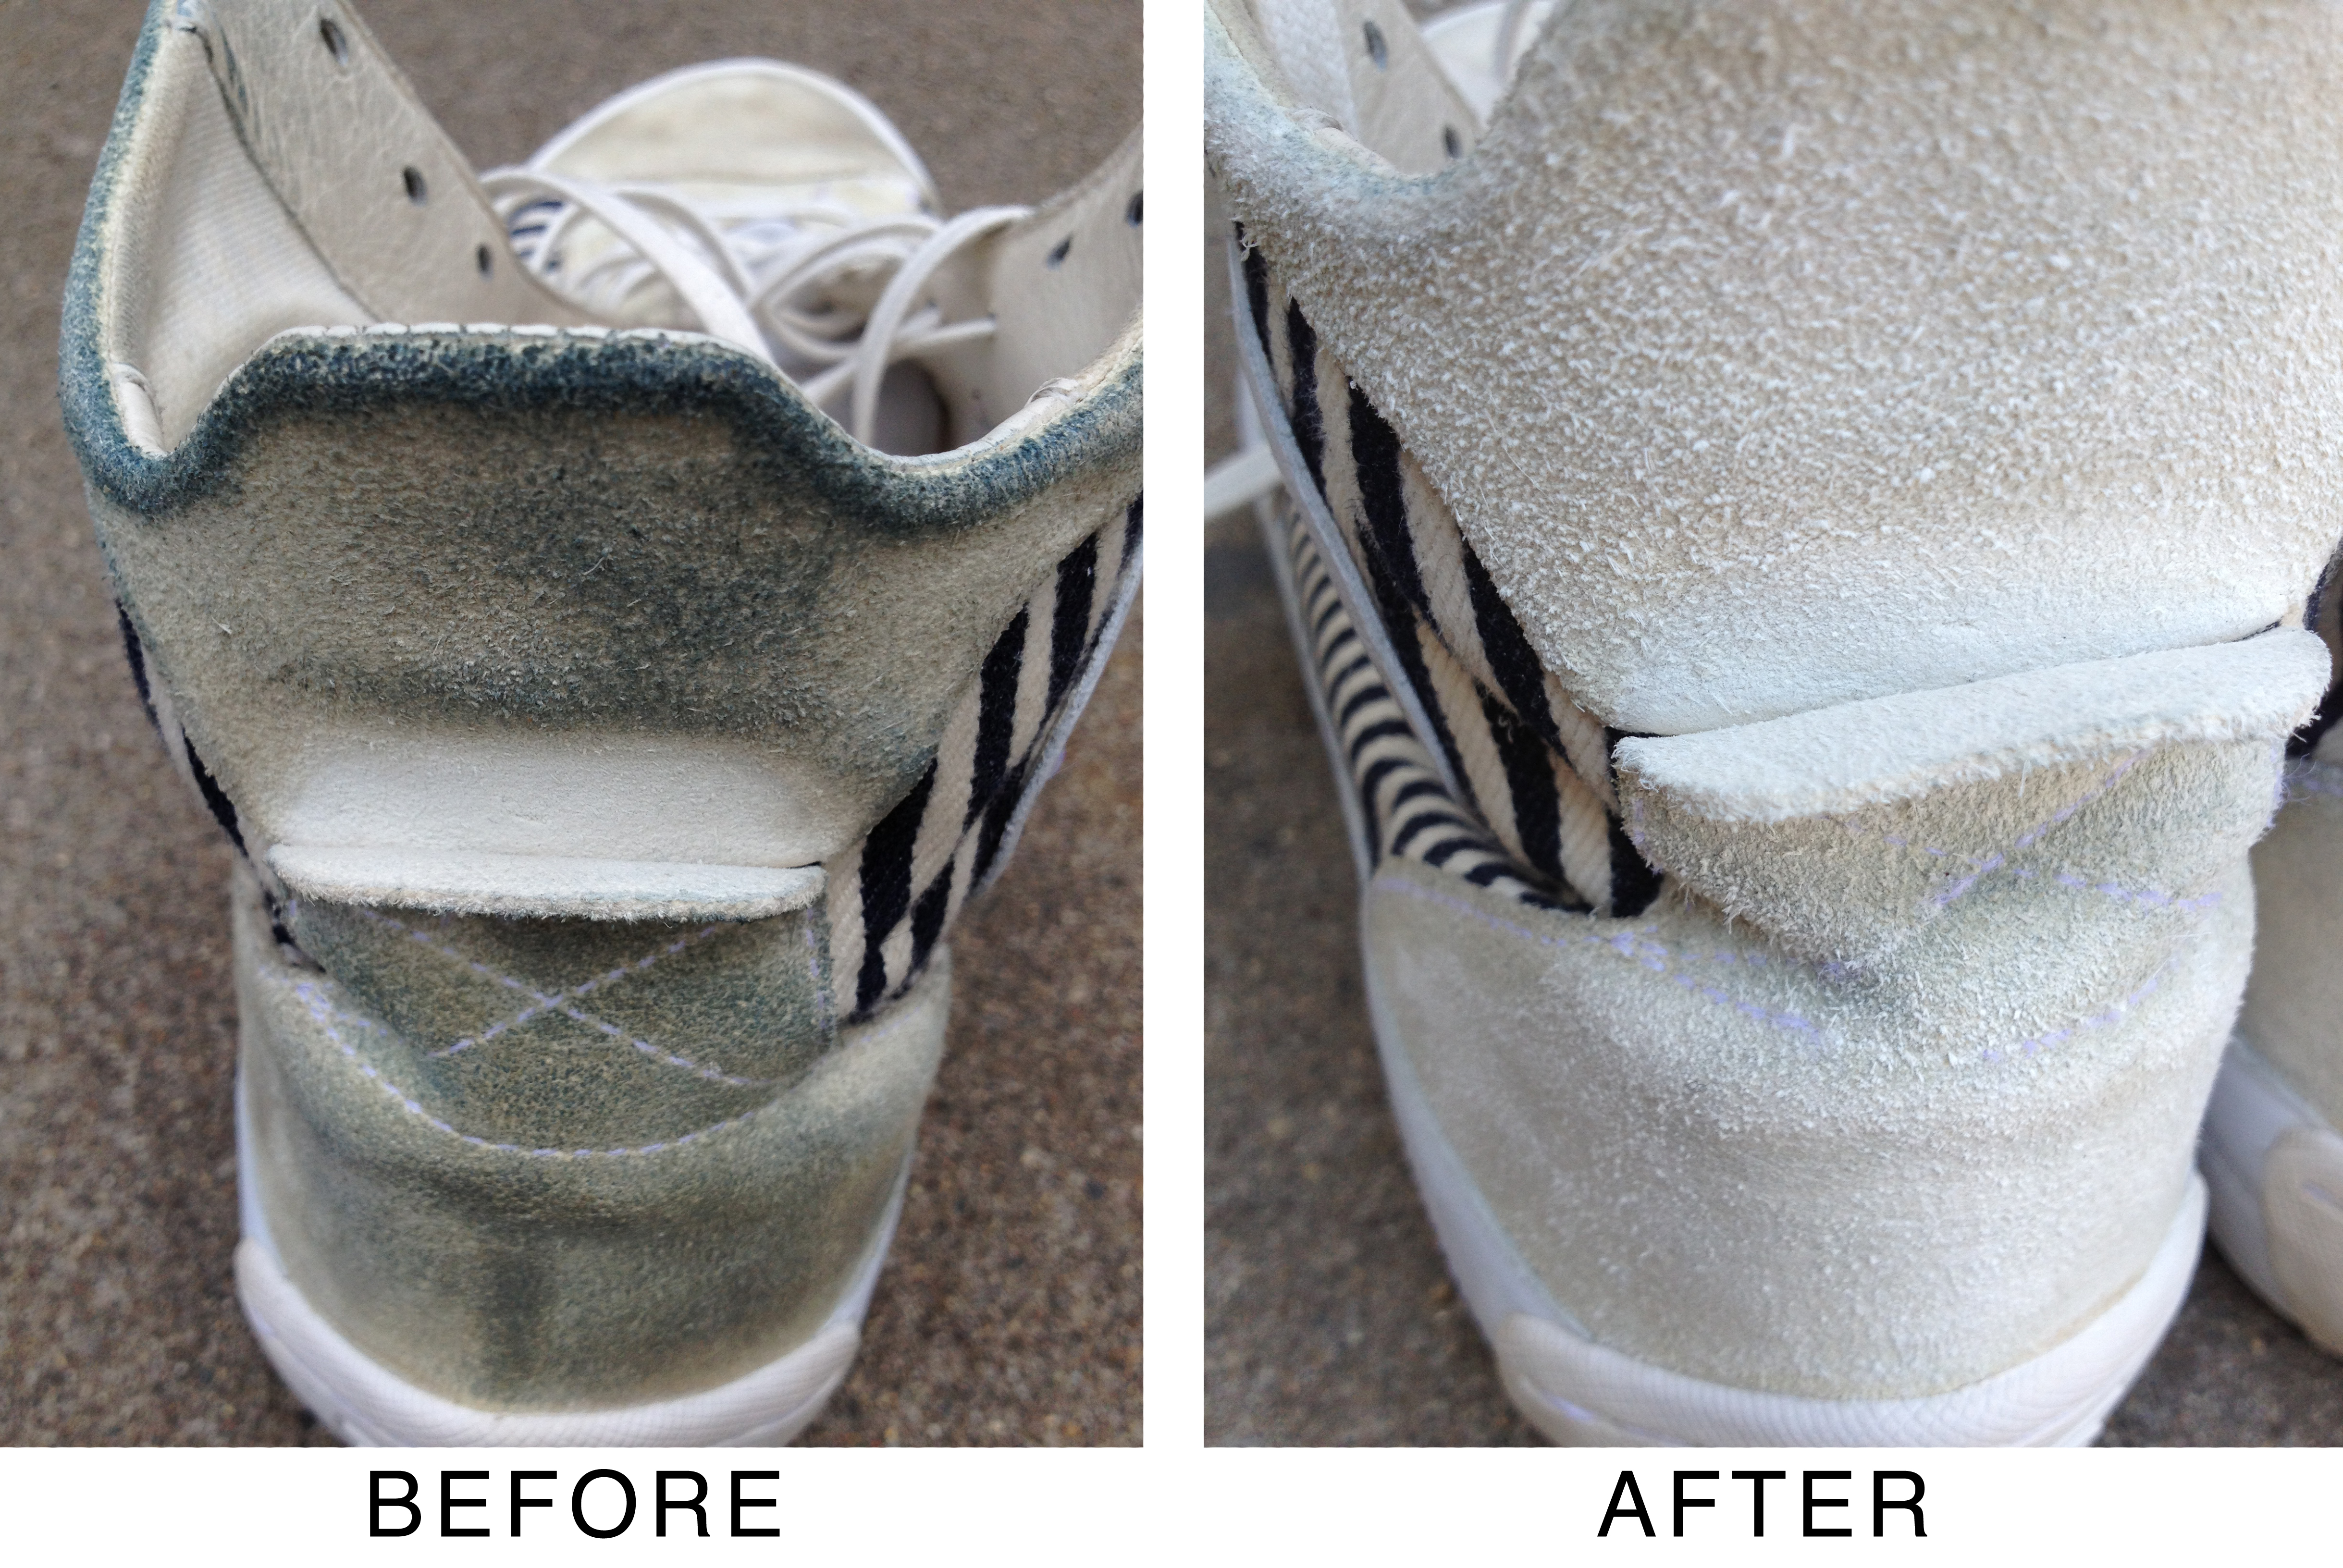 Как правильно стирать кроссовки в стиральной машине?